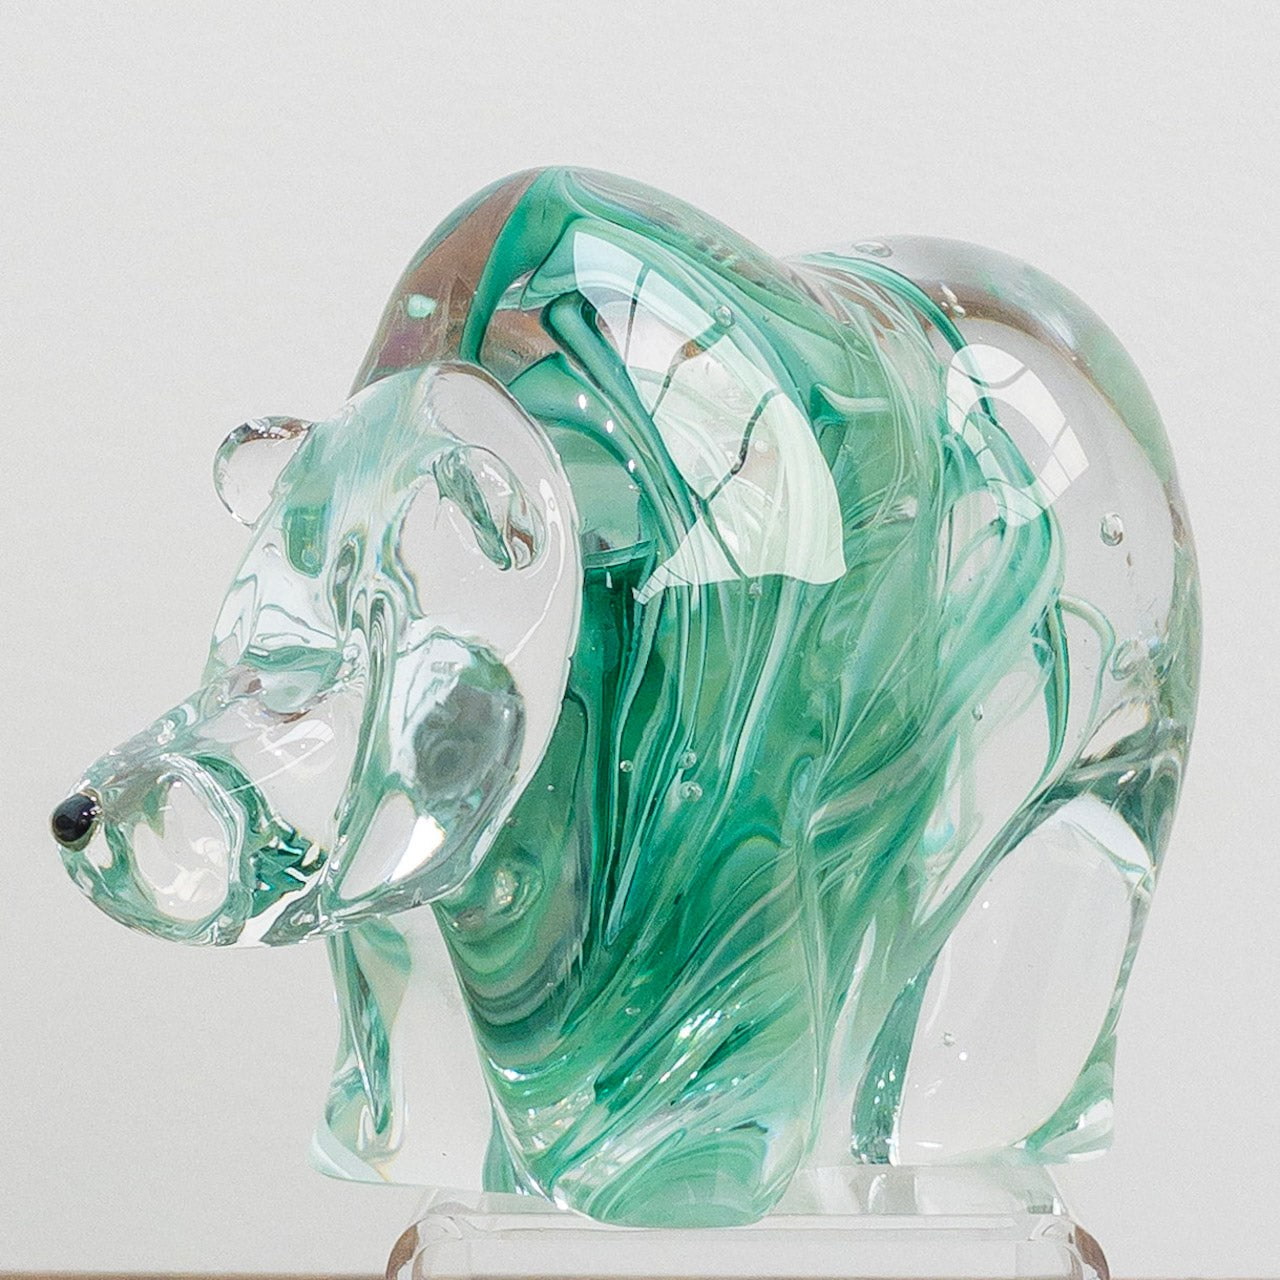 Nosey Glass Bear - Spearmint Green | 7" x 4" x 3" Hot Sculpted Blown Glass Hayden MacRae